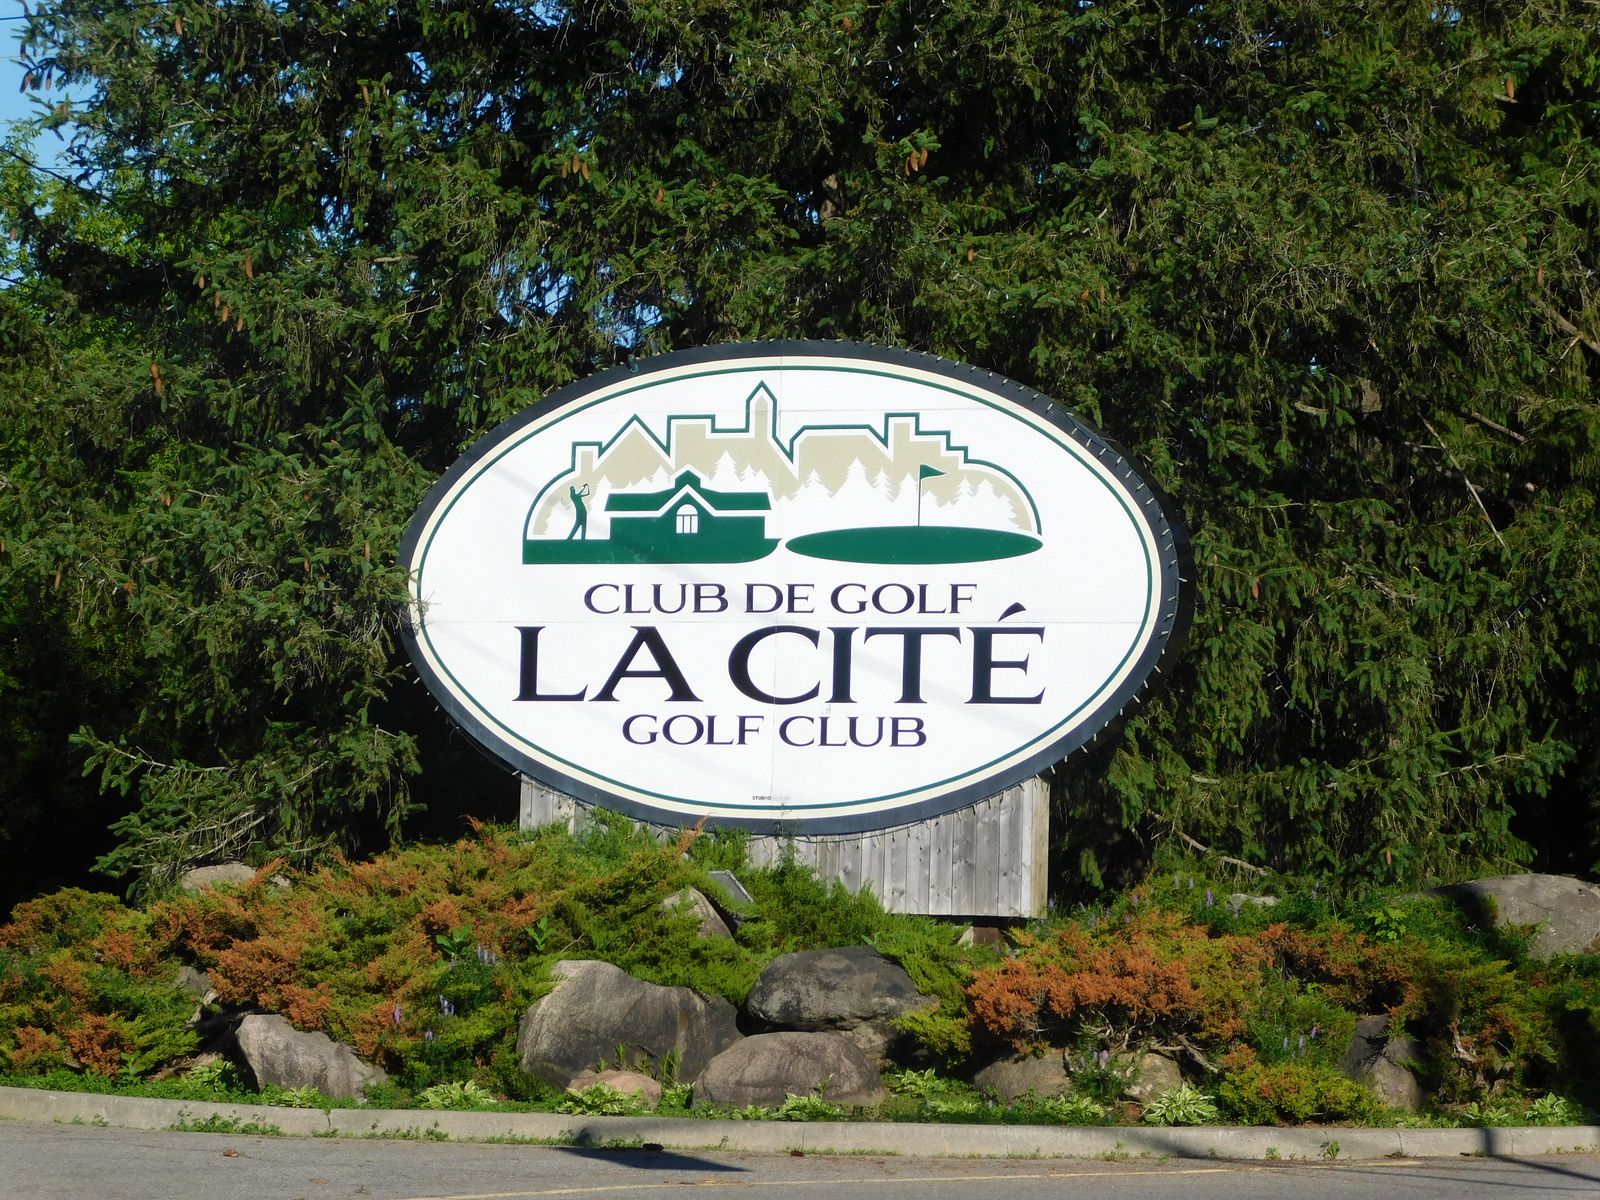 Cité golf sale rumour persists